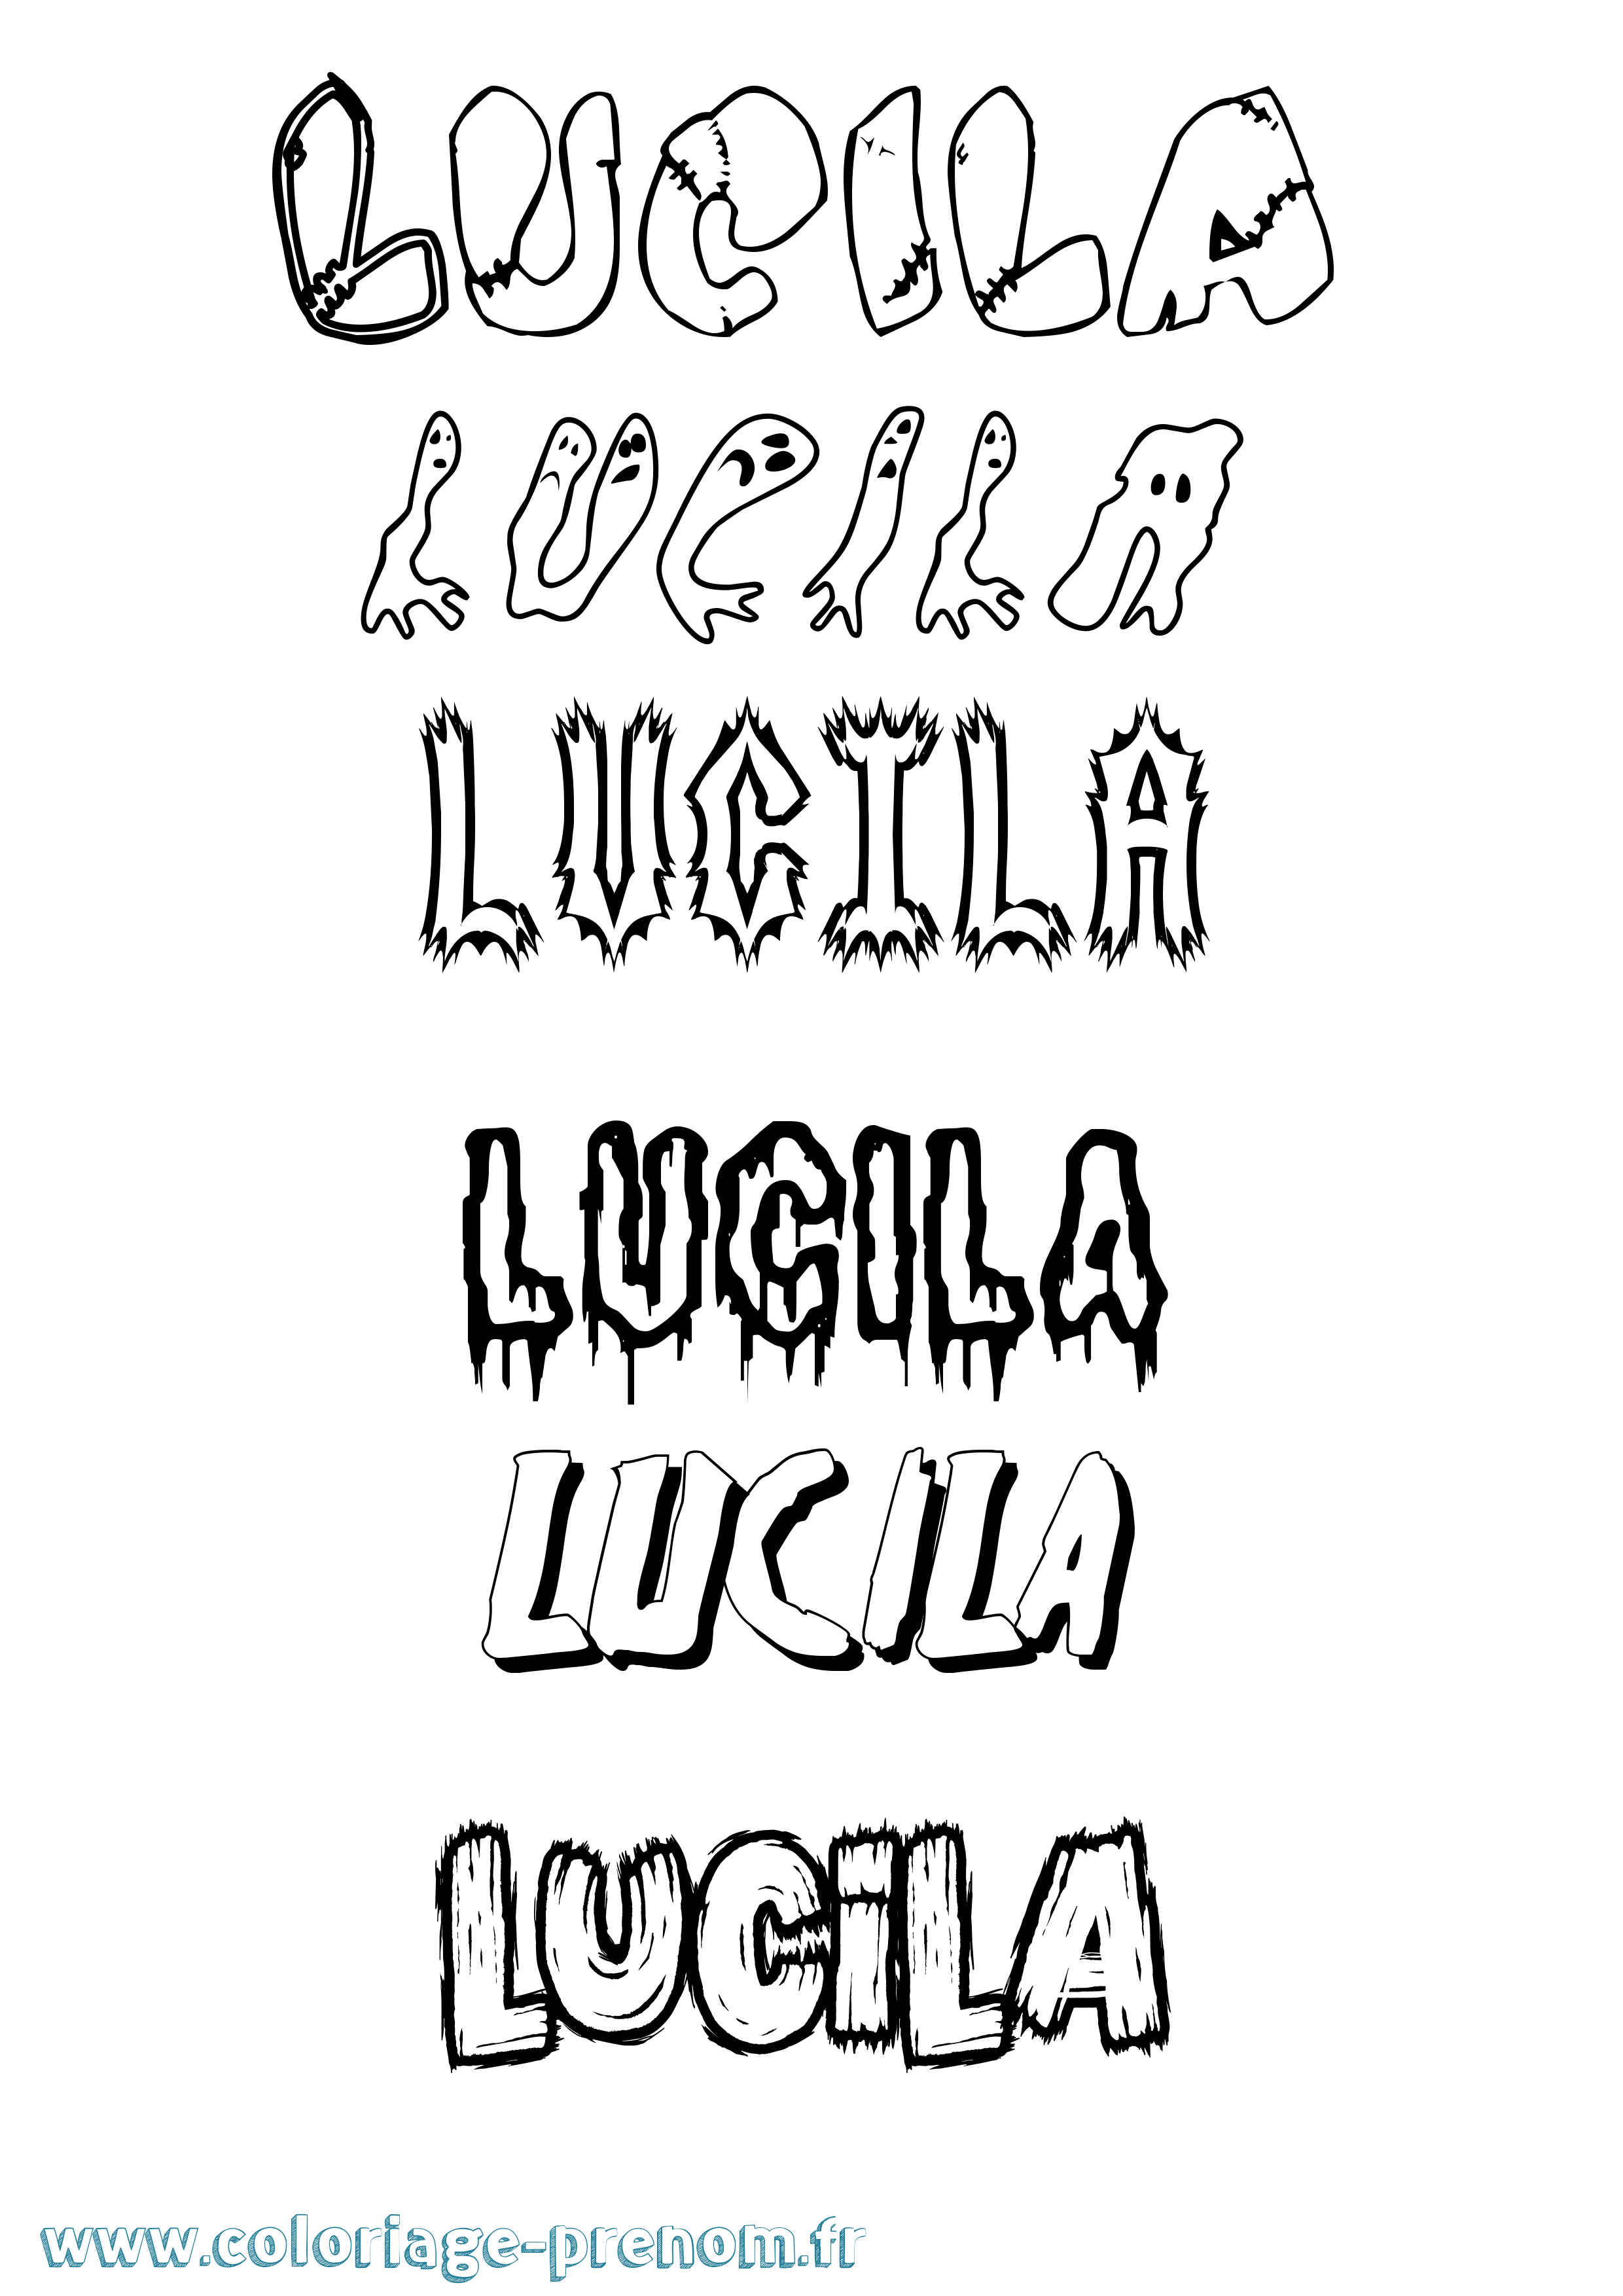 Coloriage prénom Lucila Frisson